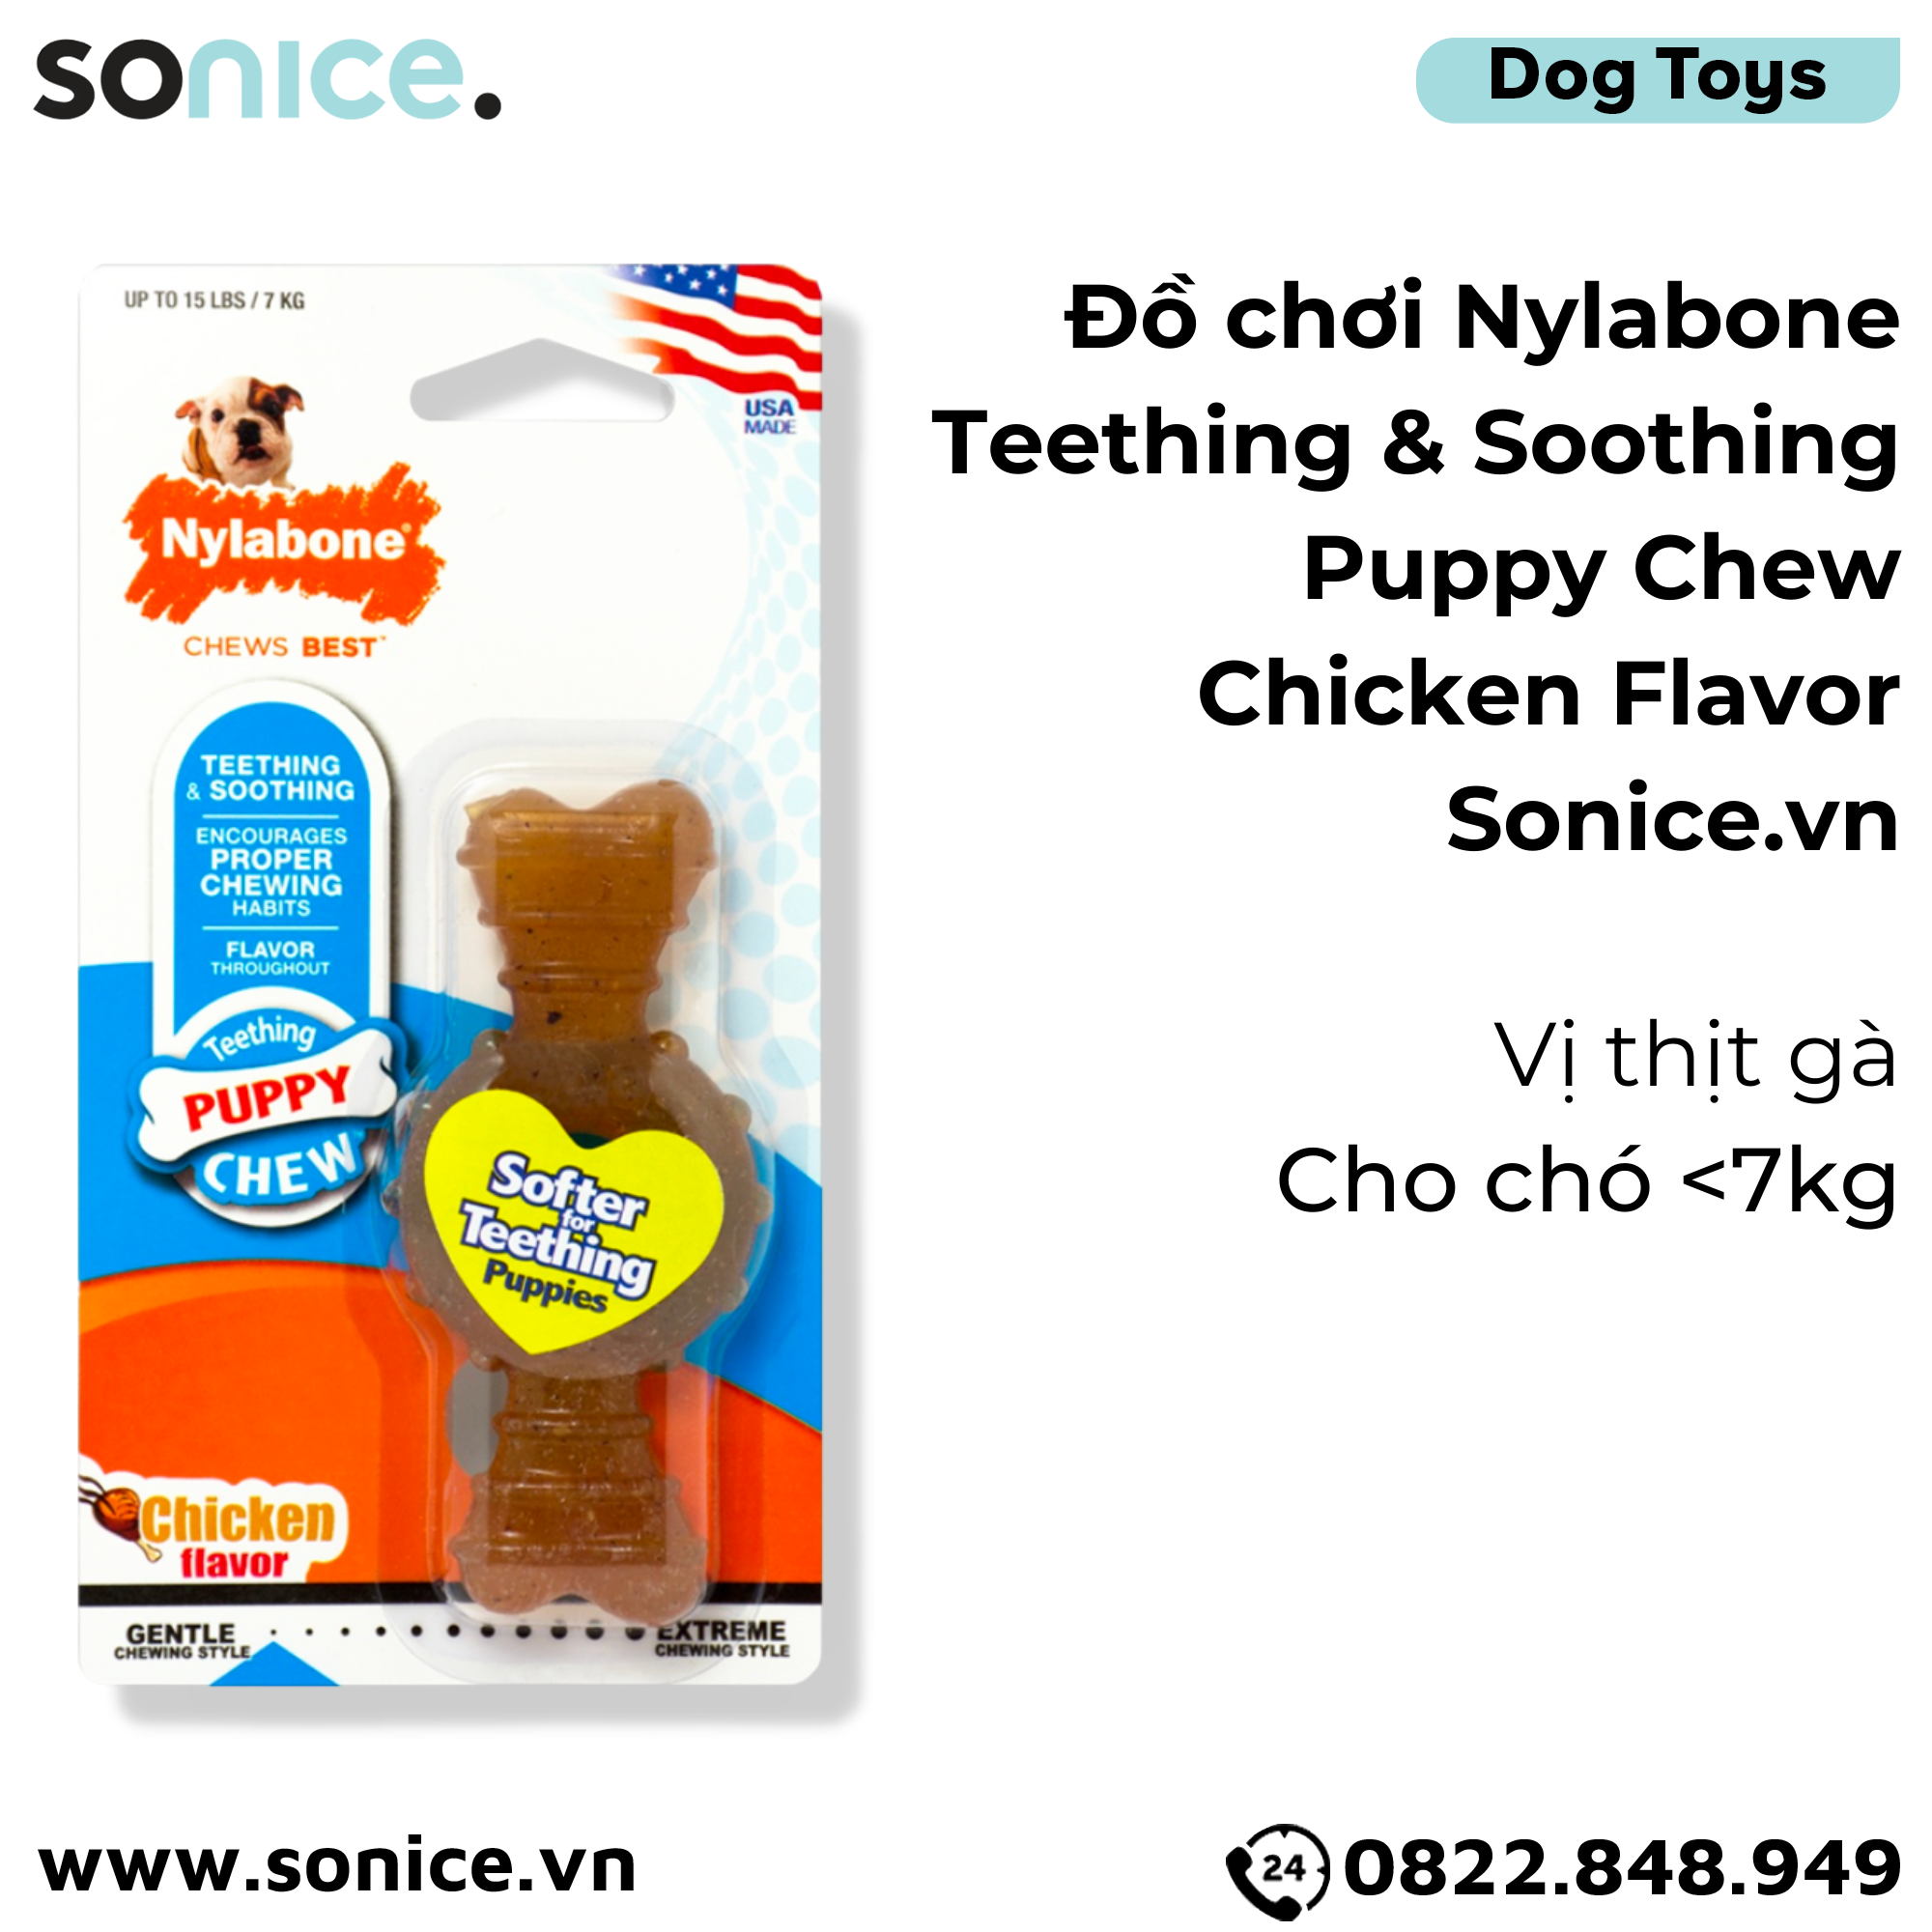  Đồ chơi Nylabone Teething & Soothing Puppy Chew Chicken Flavor Toys - Vị thịt gà, cho chó < 7kg SONICE. 